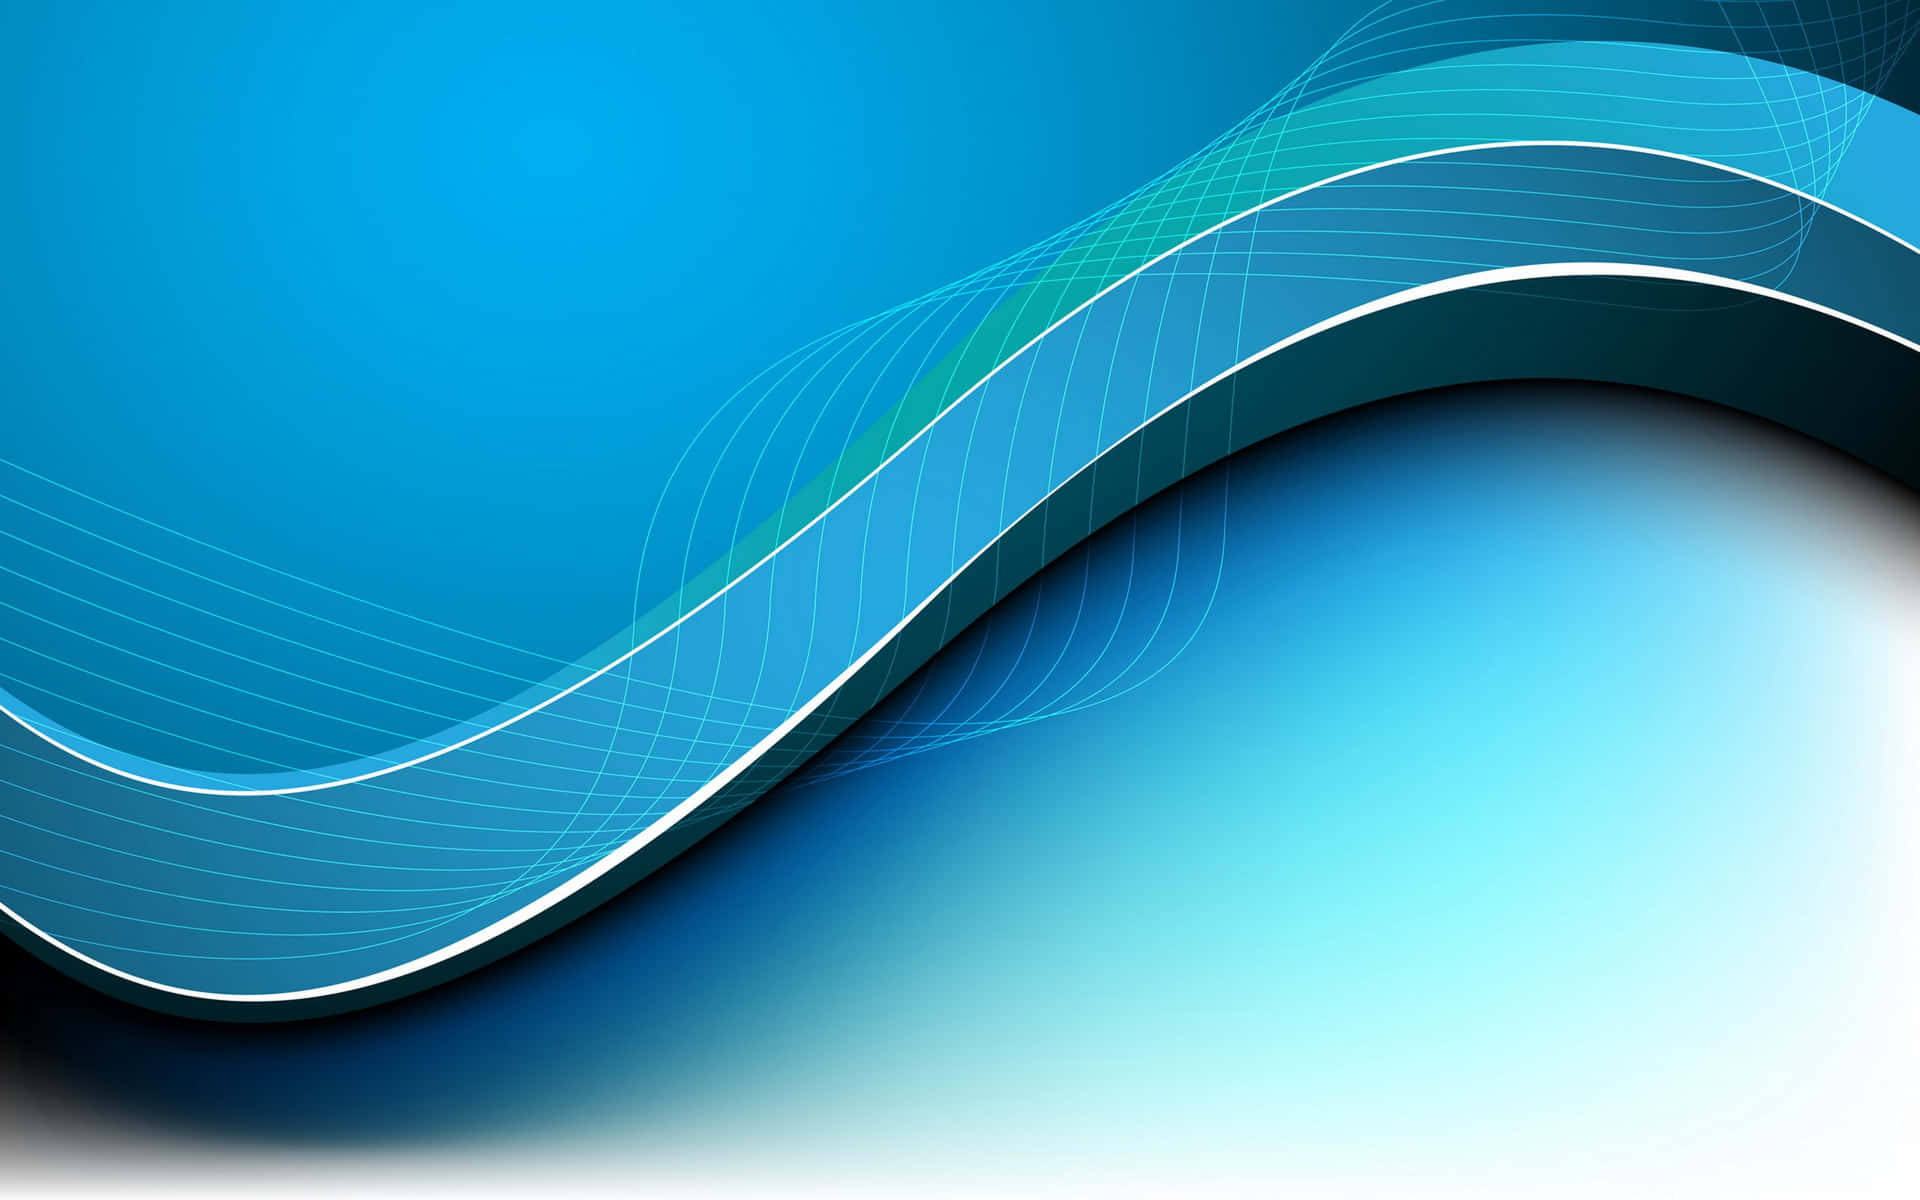 Blue Wave Design Vector Background